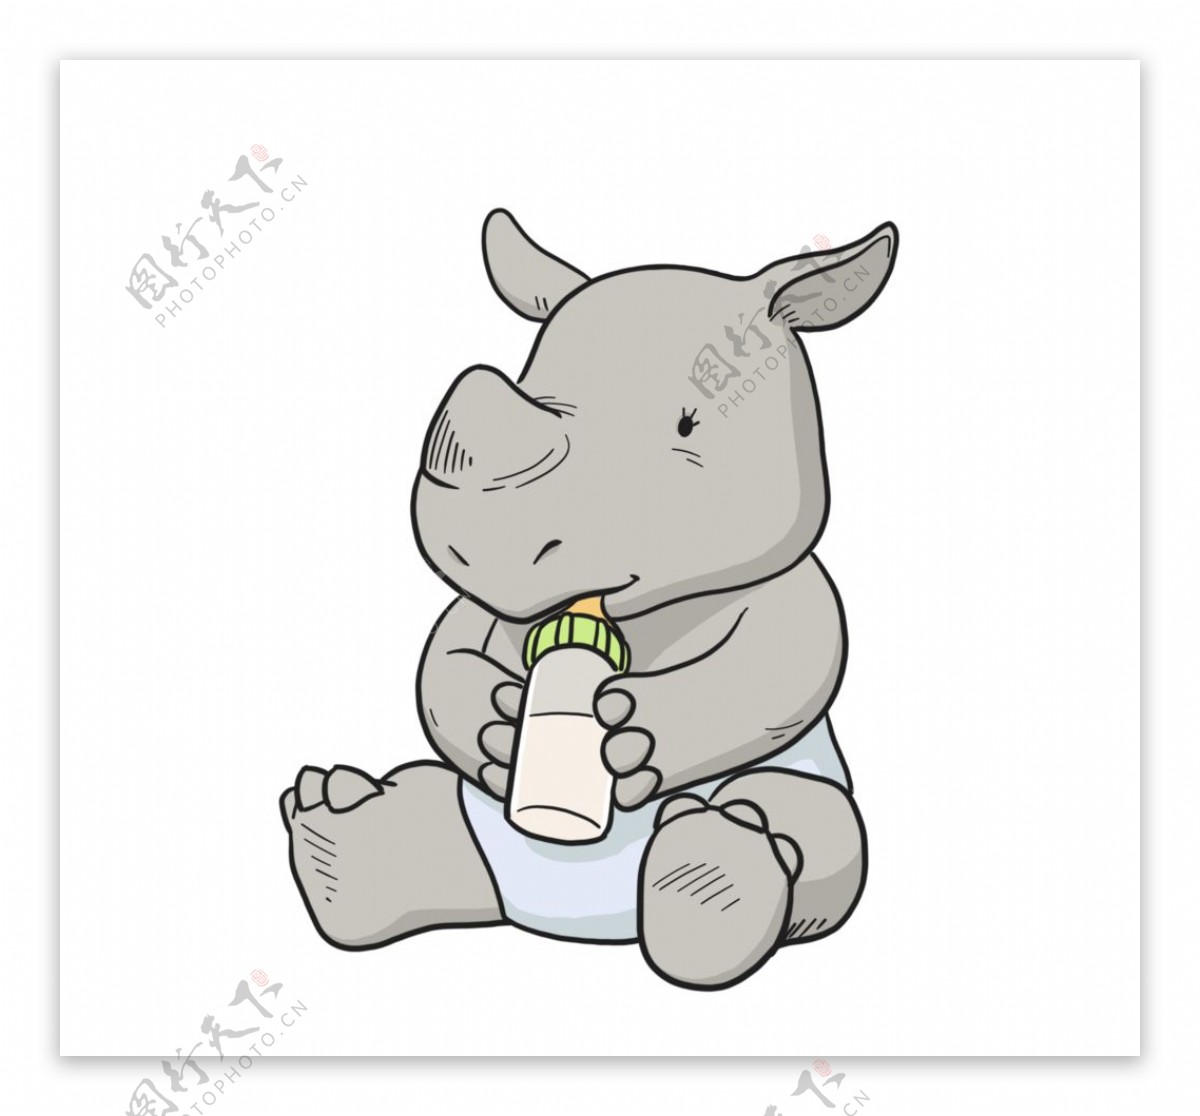 抱着奶瓶很爱的犀牛宝宝图片